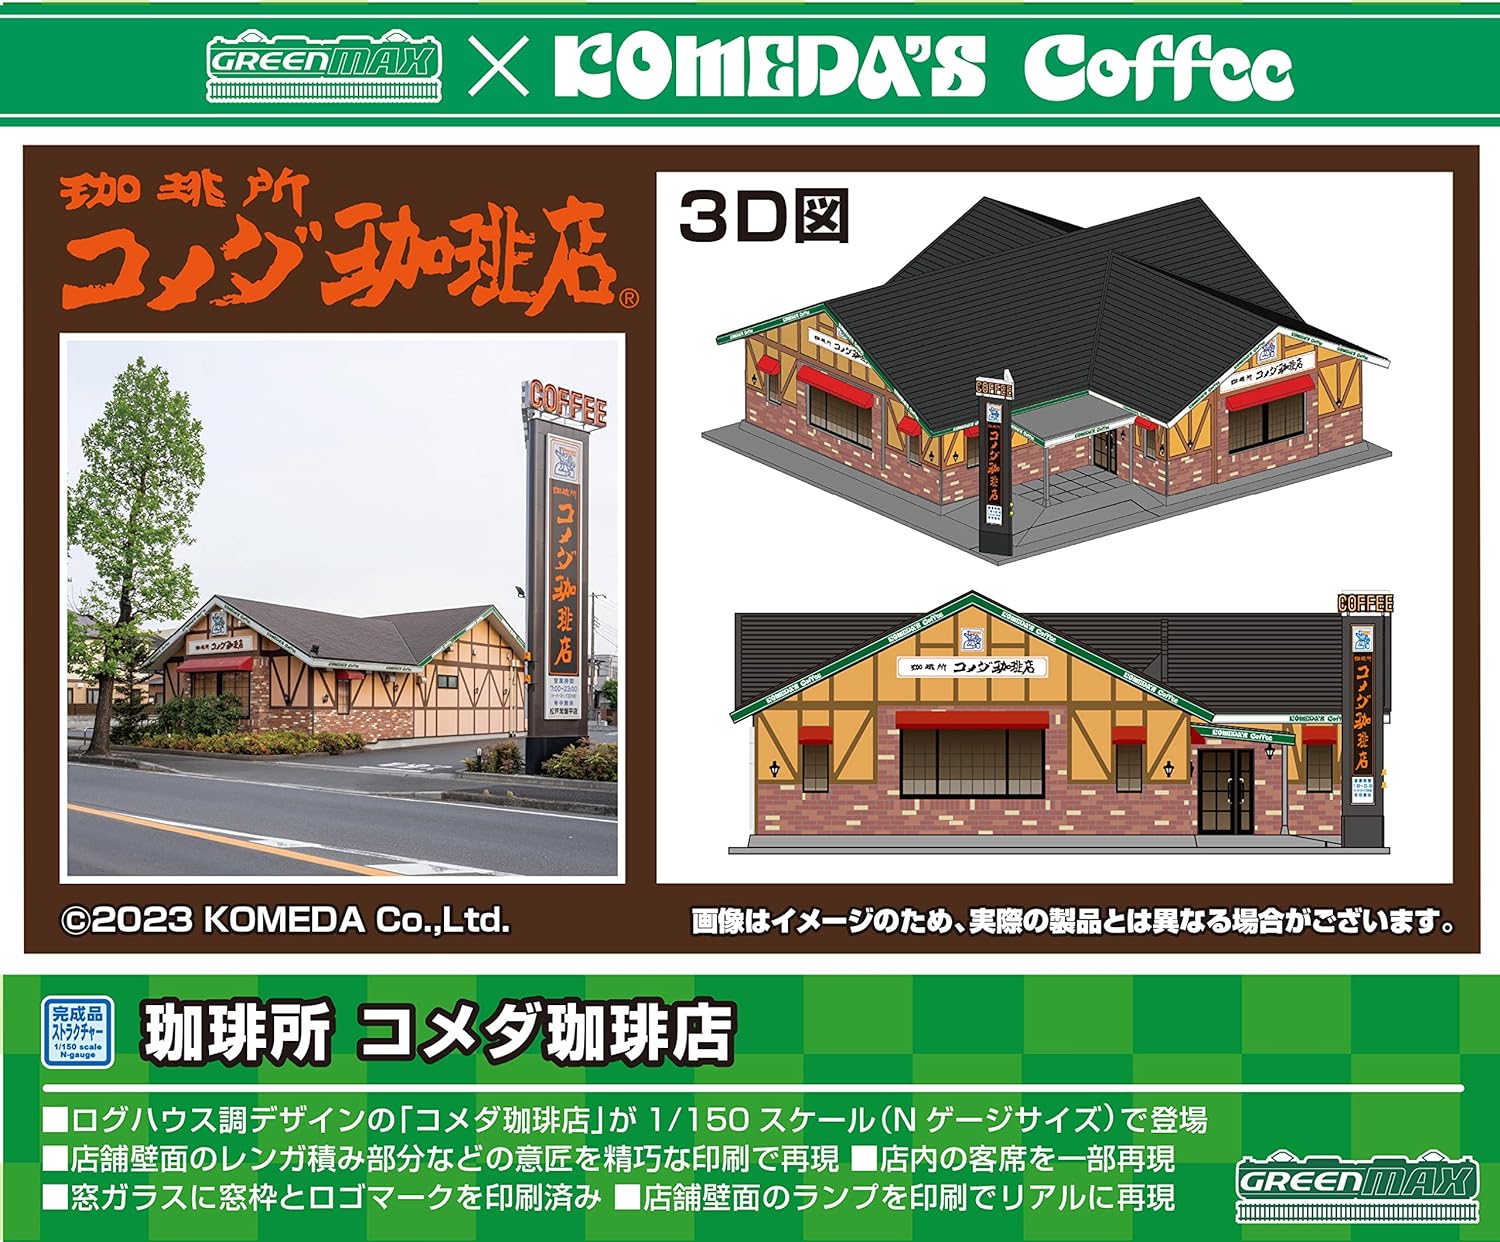 Green Max N Gauge Coffee Komeda Coffee Shop 2713 - BanzaiHobby